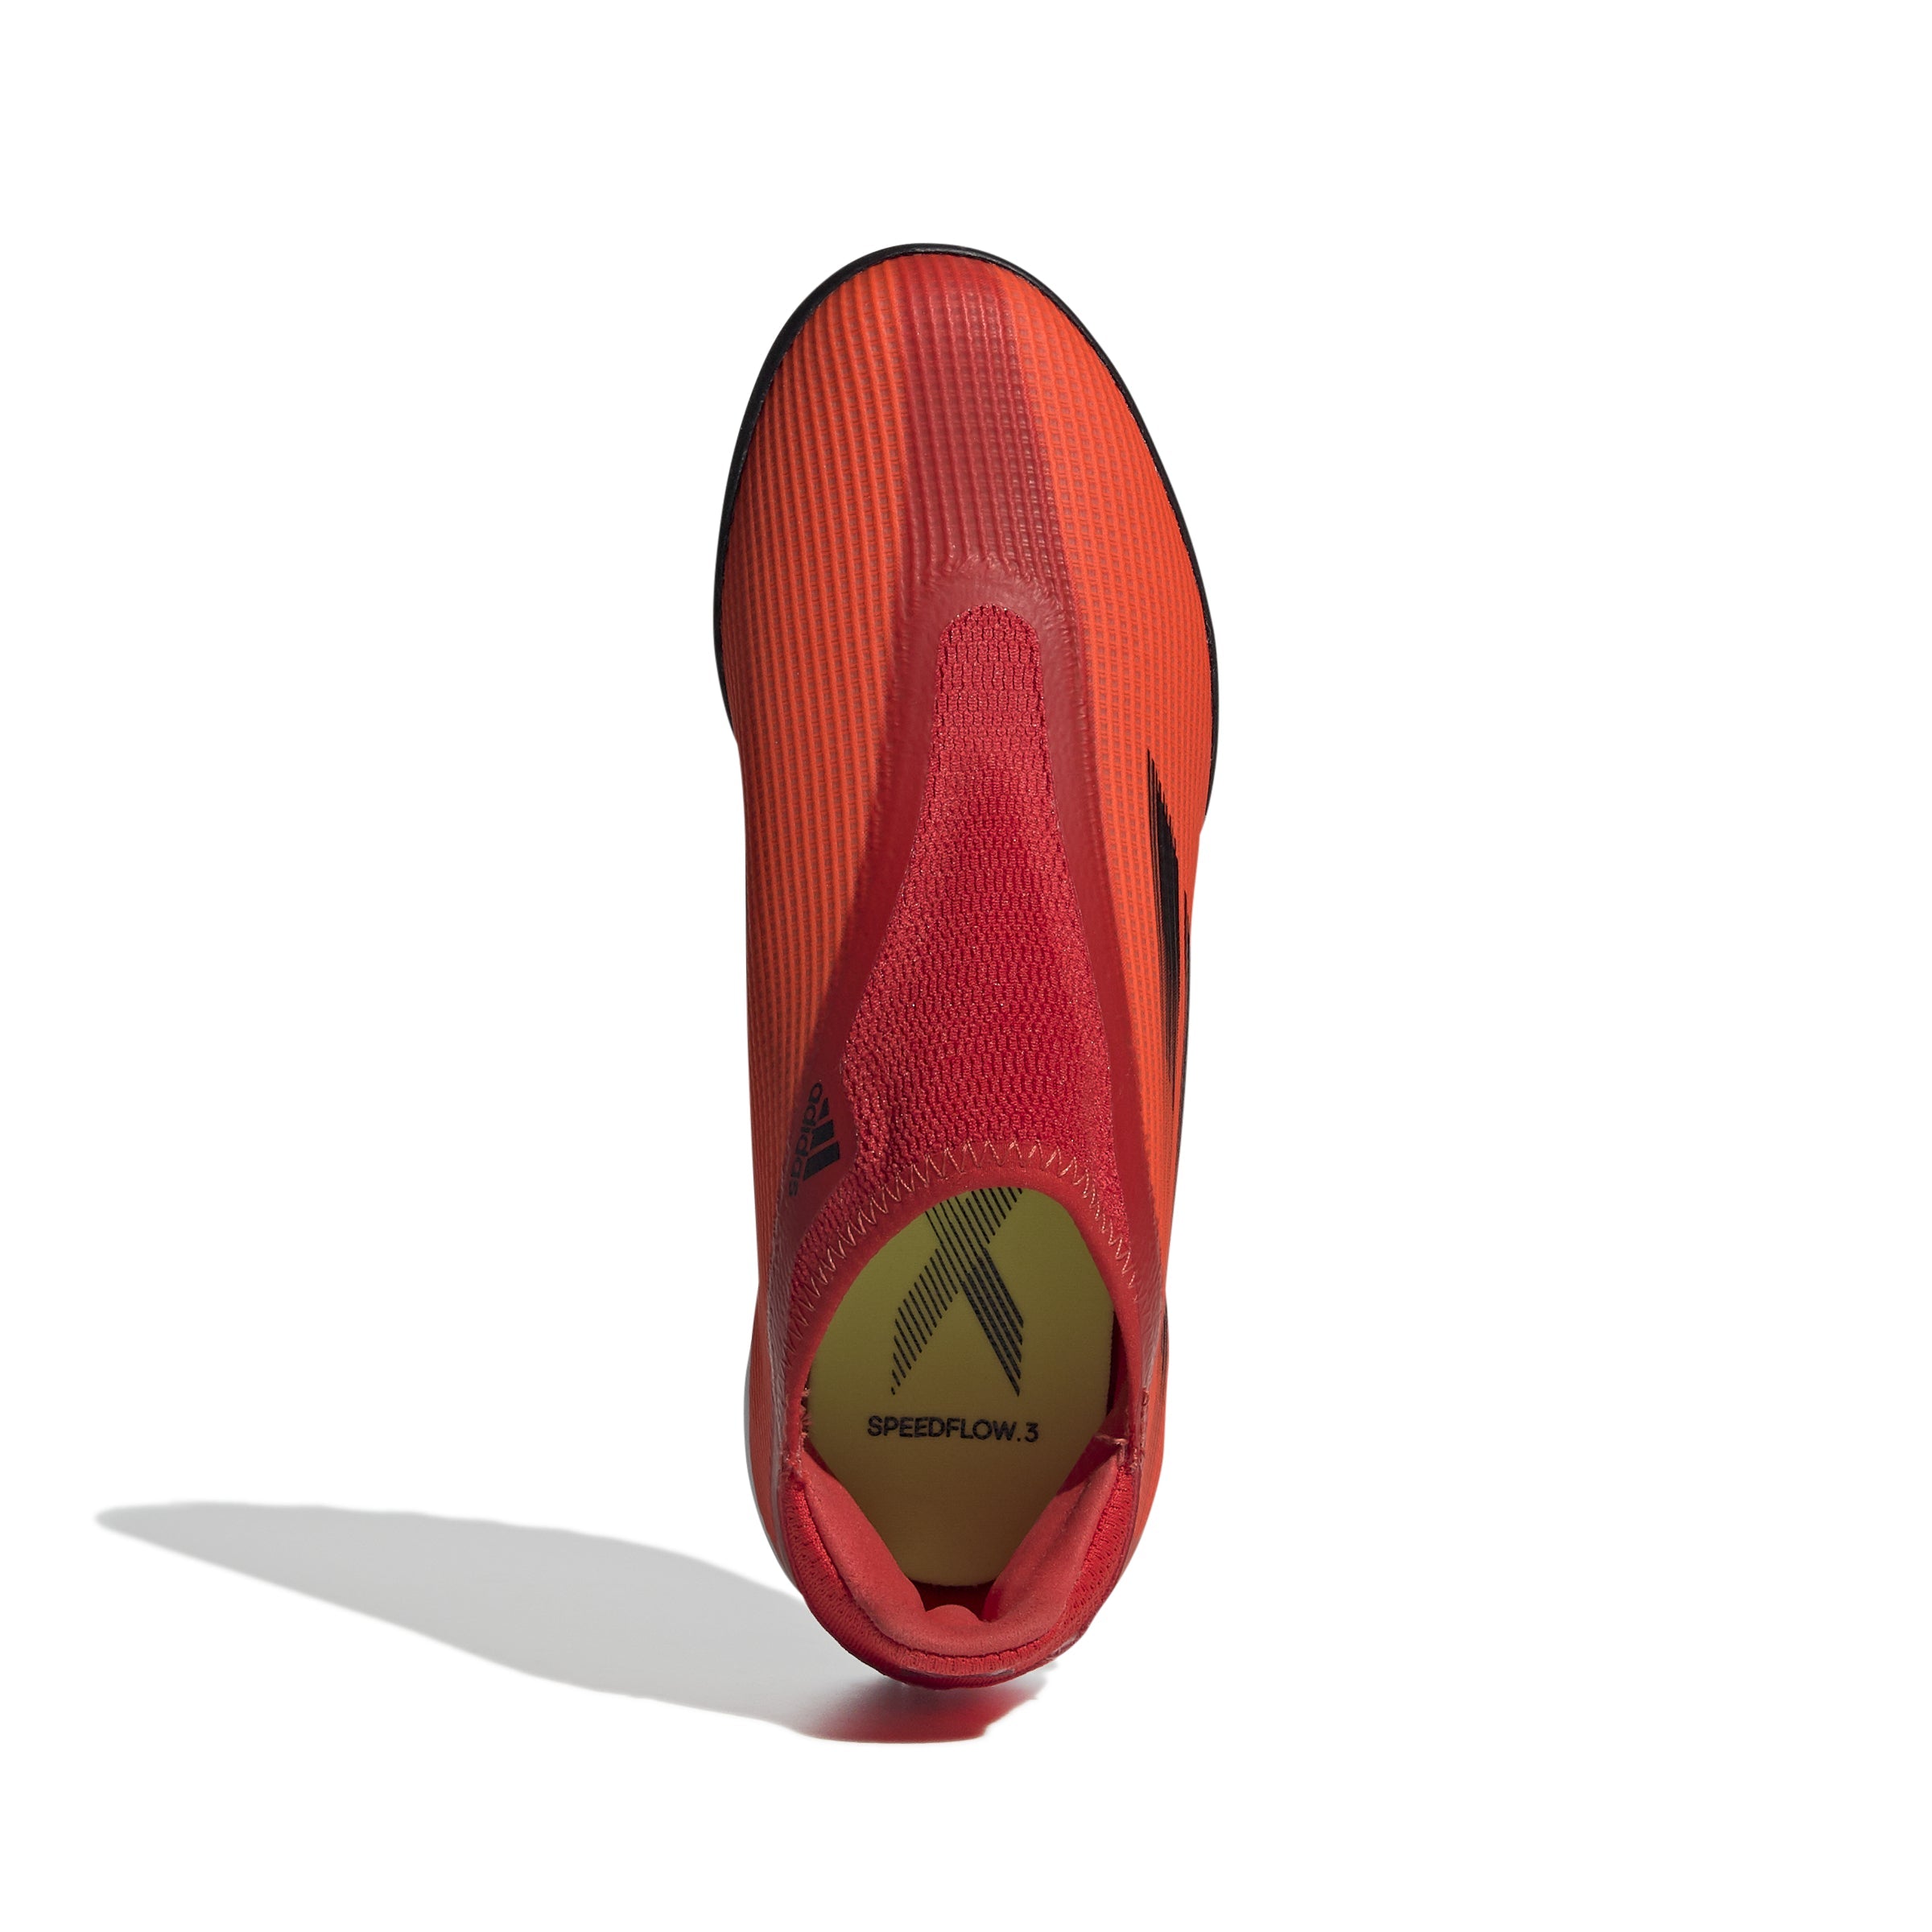 Zapatos para césped artificial adidas X Speed ​​Flow 3 LL TF para jóvenes